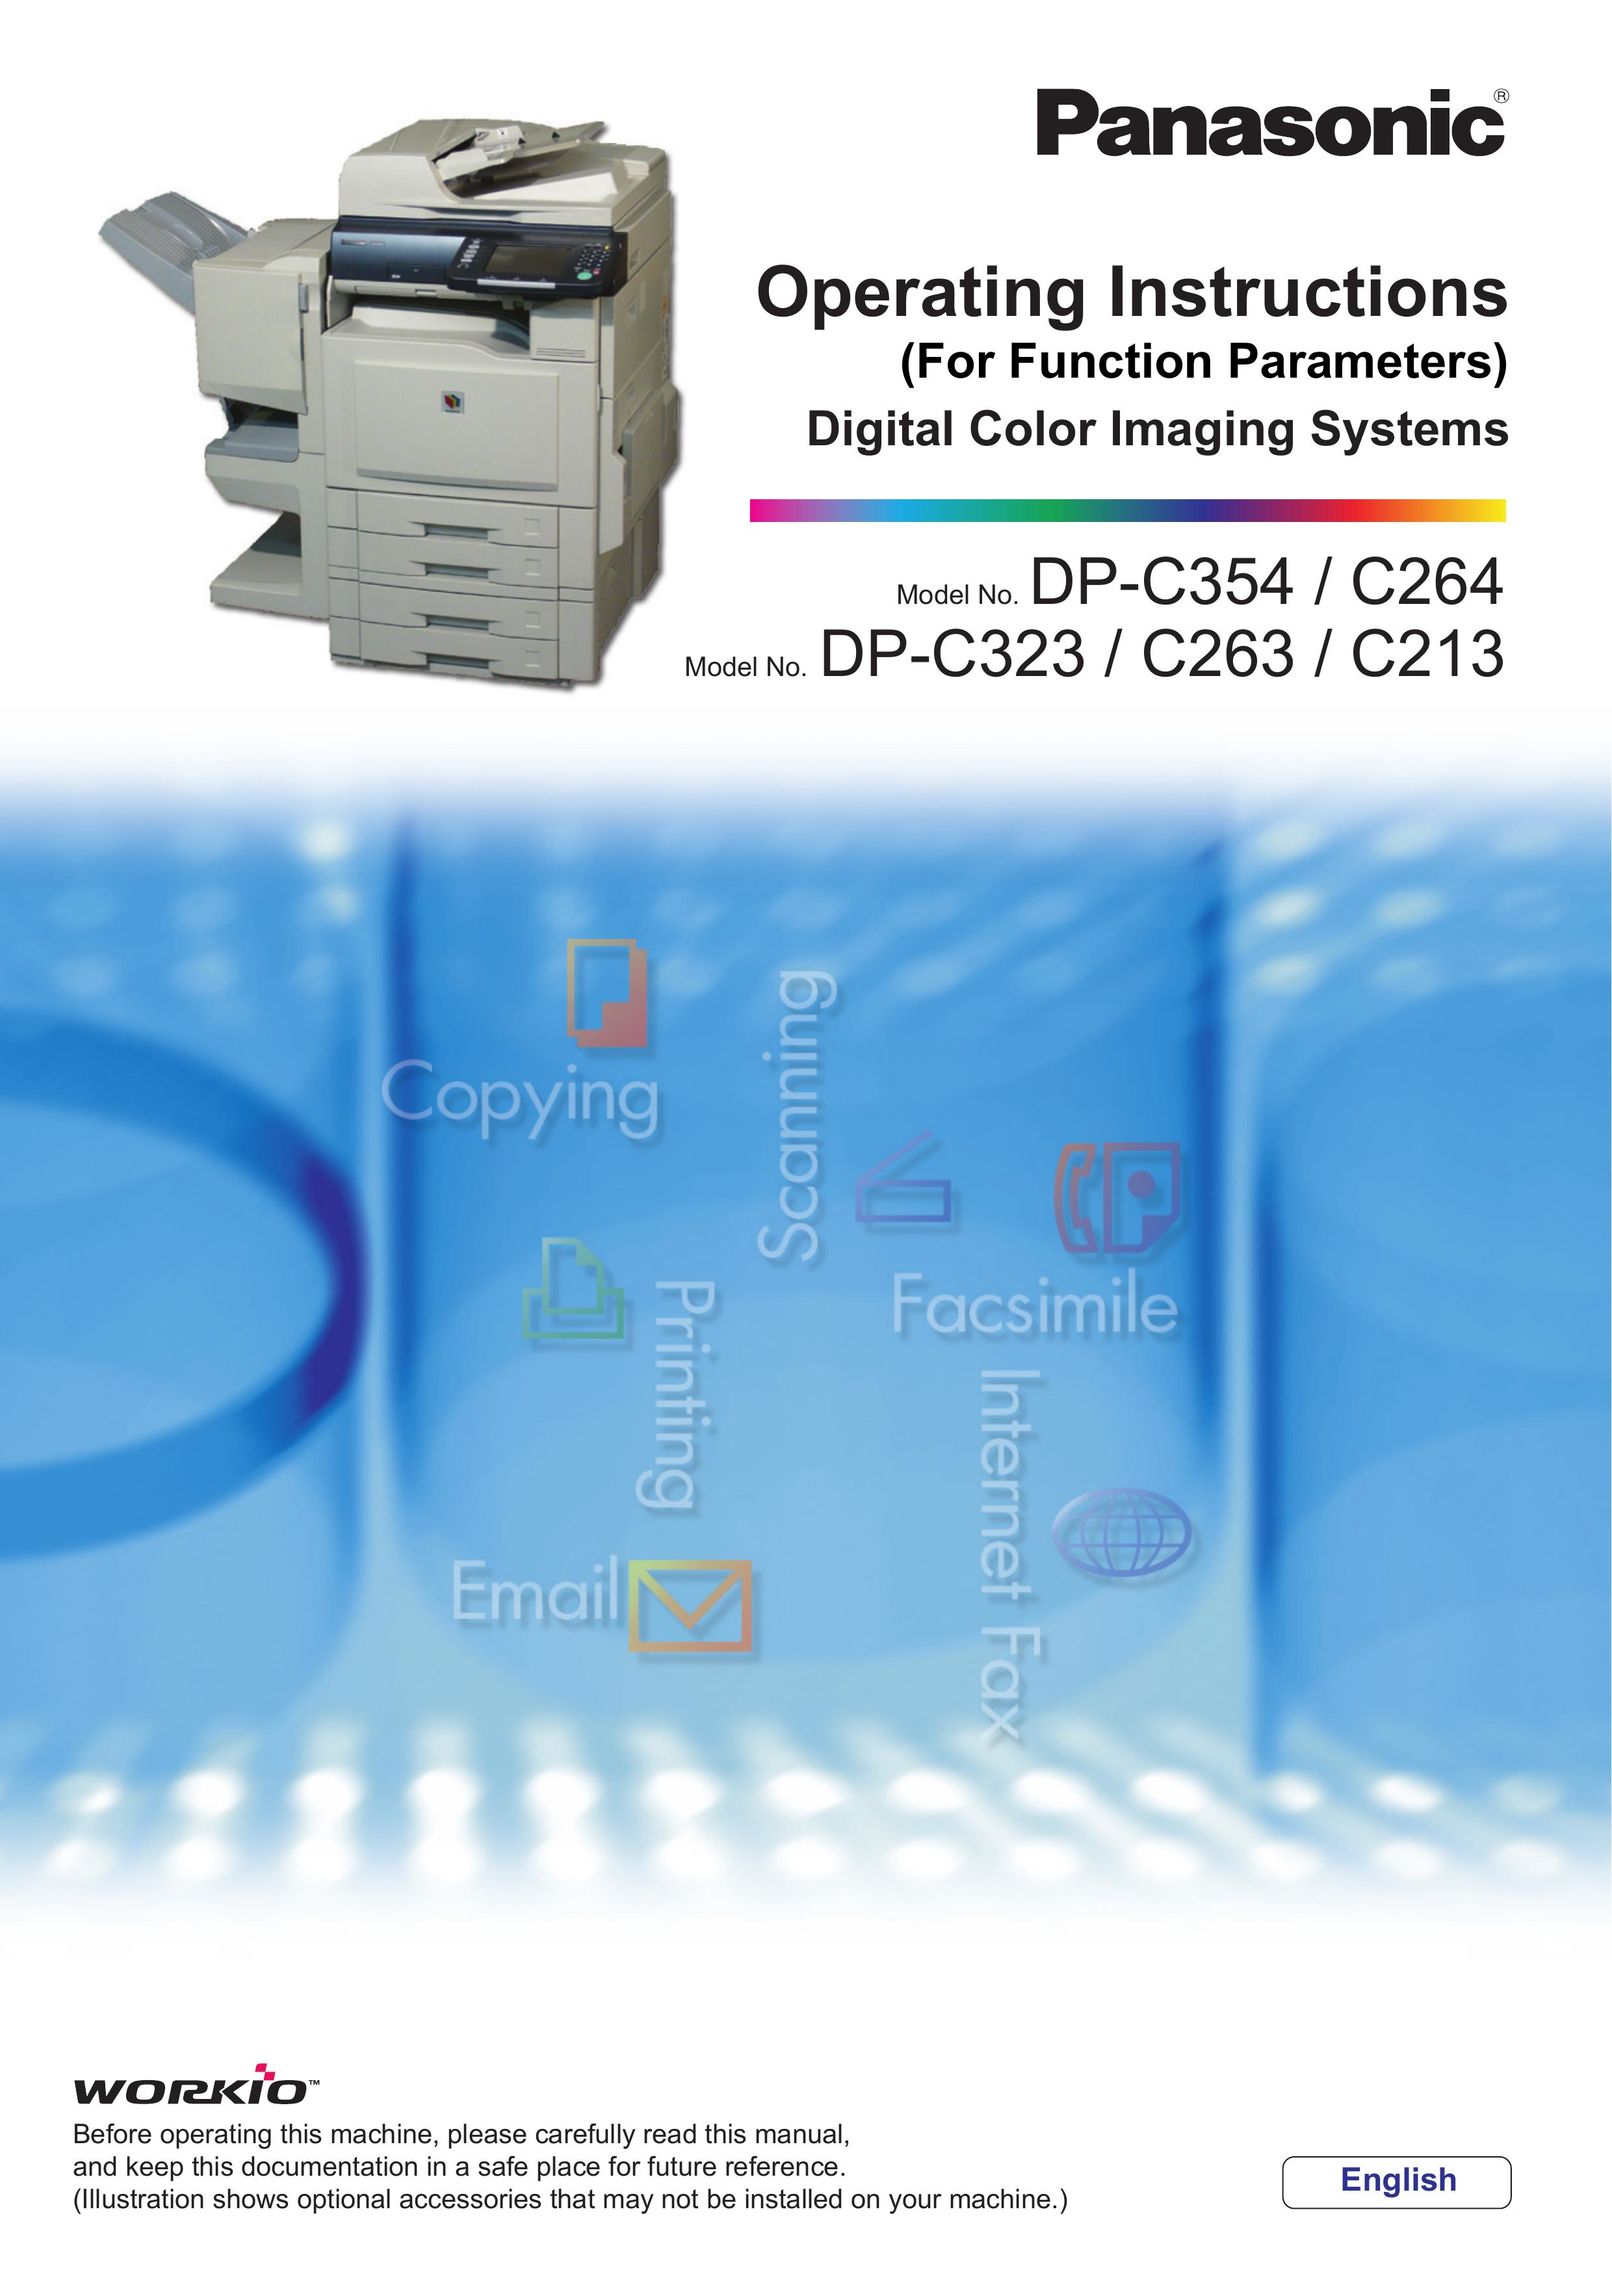 Panasonic DP-C263 Printer User Manual